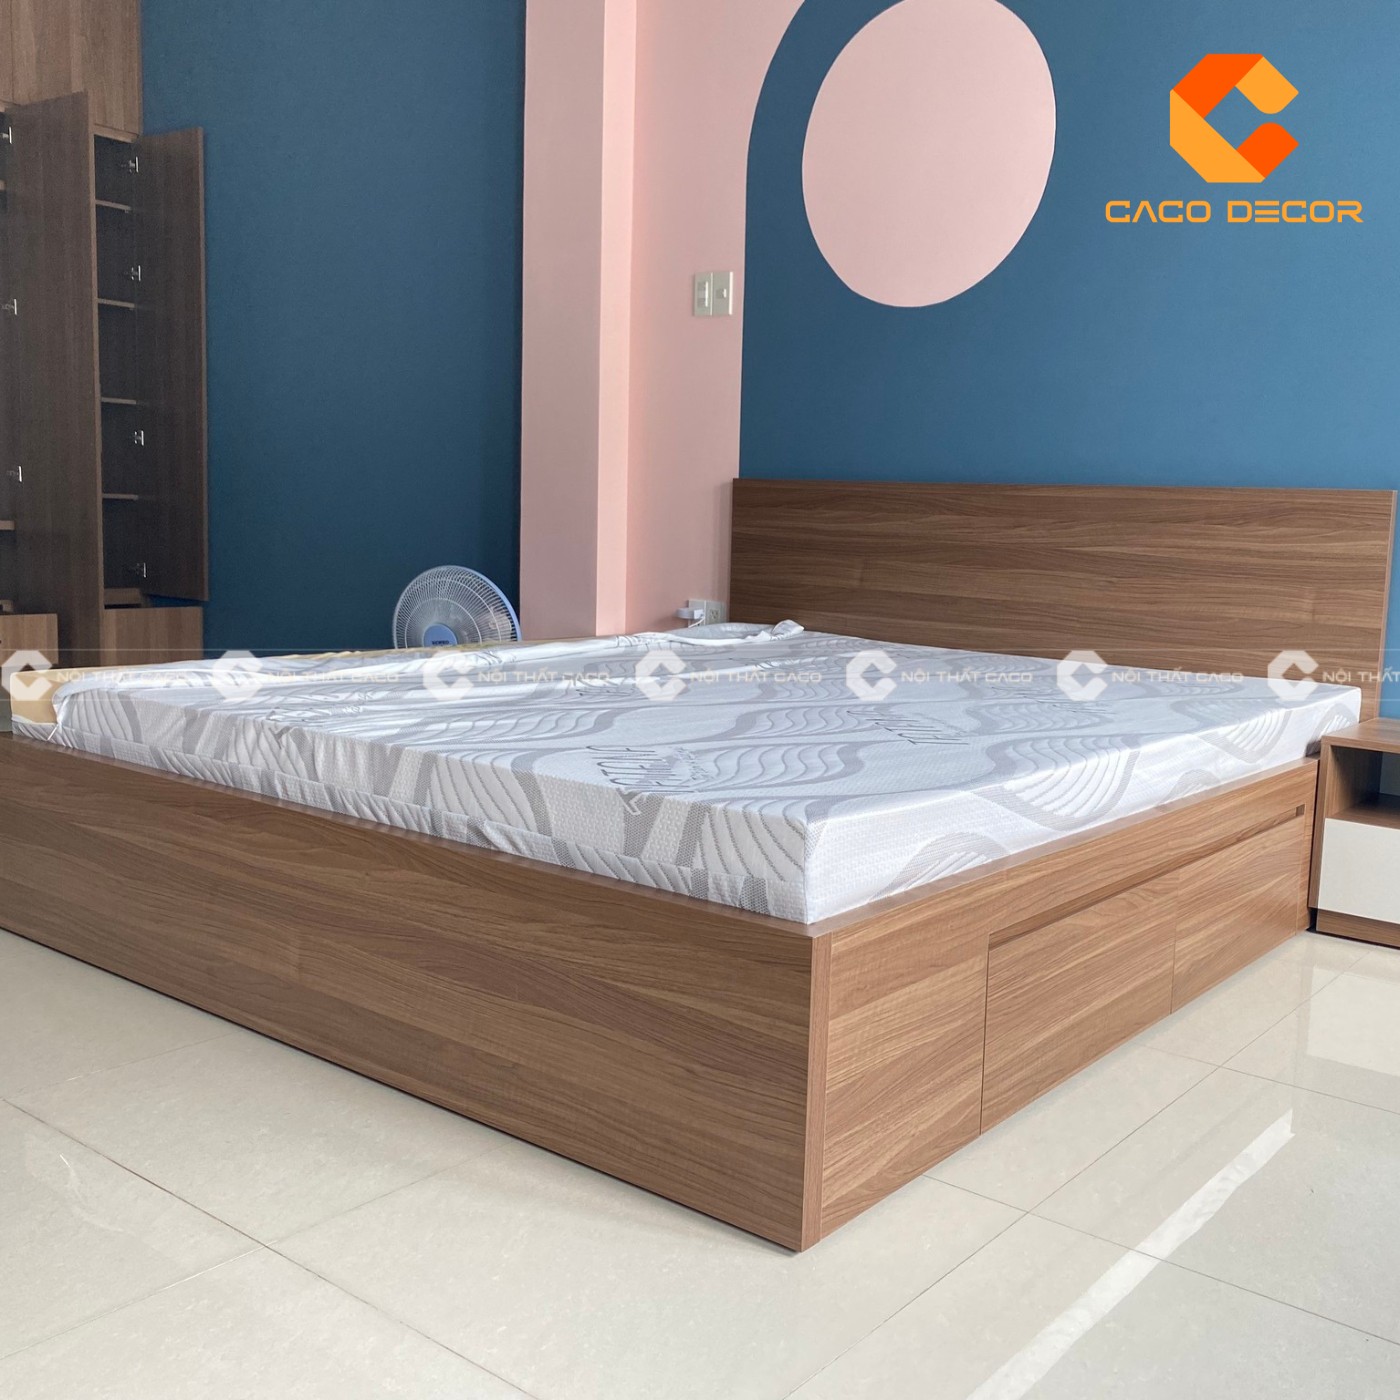 Giường ngủ gỗ công nghiệp đẹp, chất lượng với giá tốt nhất thị trường 24